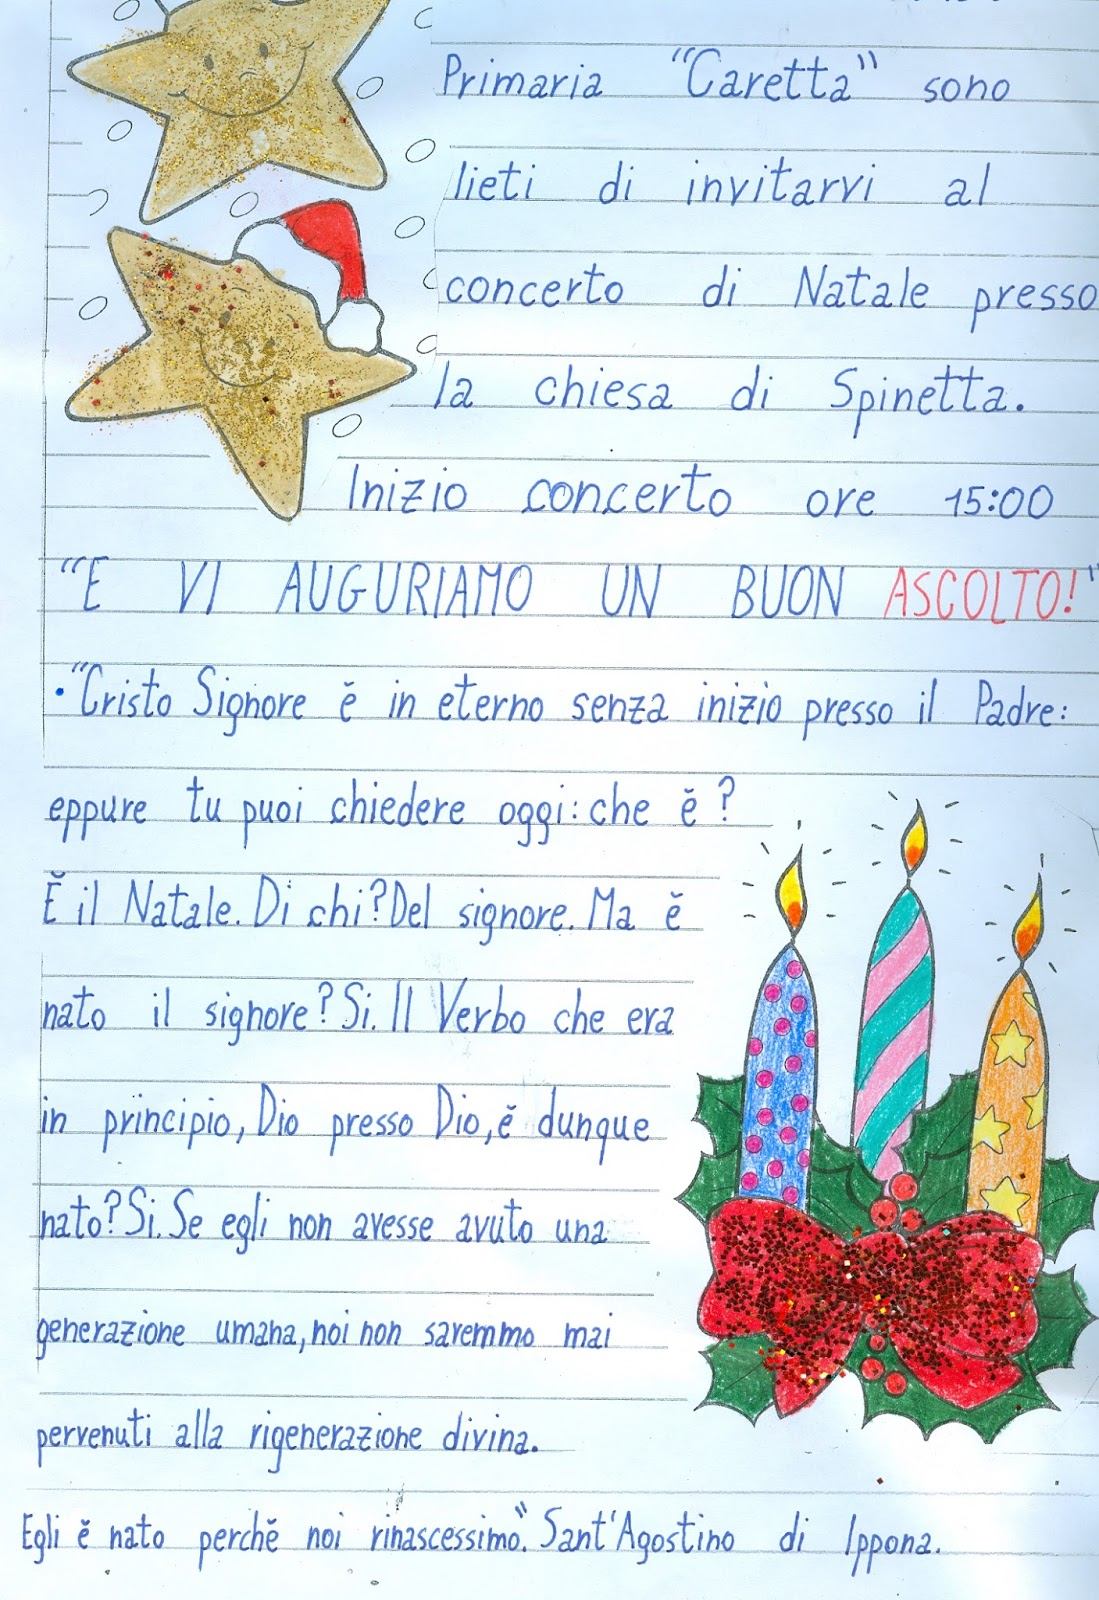 Poesie Di Natale In Dialetto Barese Per Bambini.Scuola Primaria Caretta Invito Concerto Di Natale